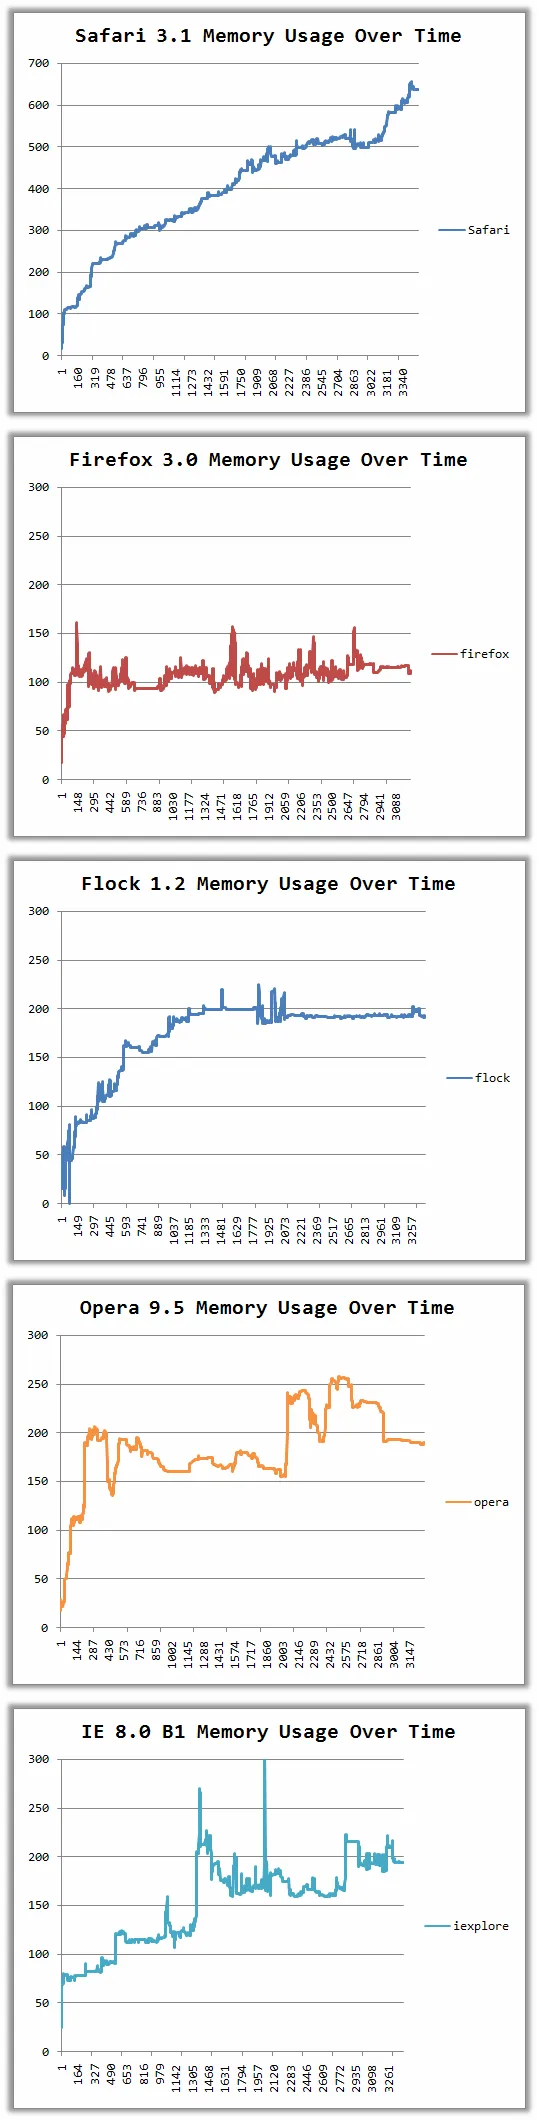 comparaison de consommation de mémoire des navigateurs